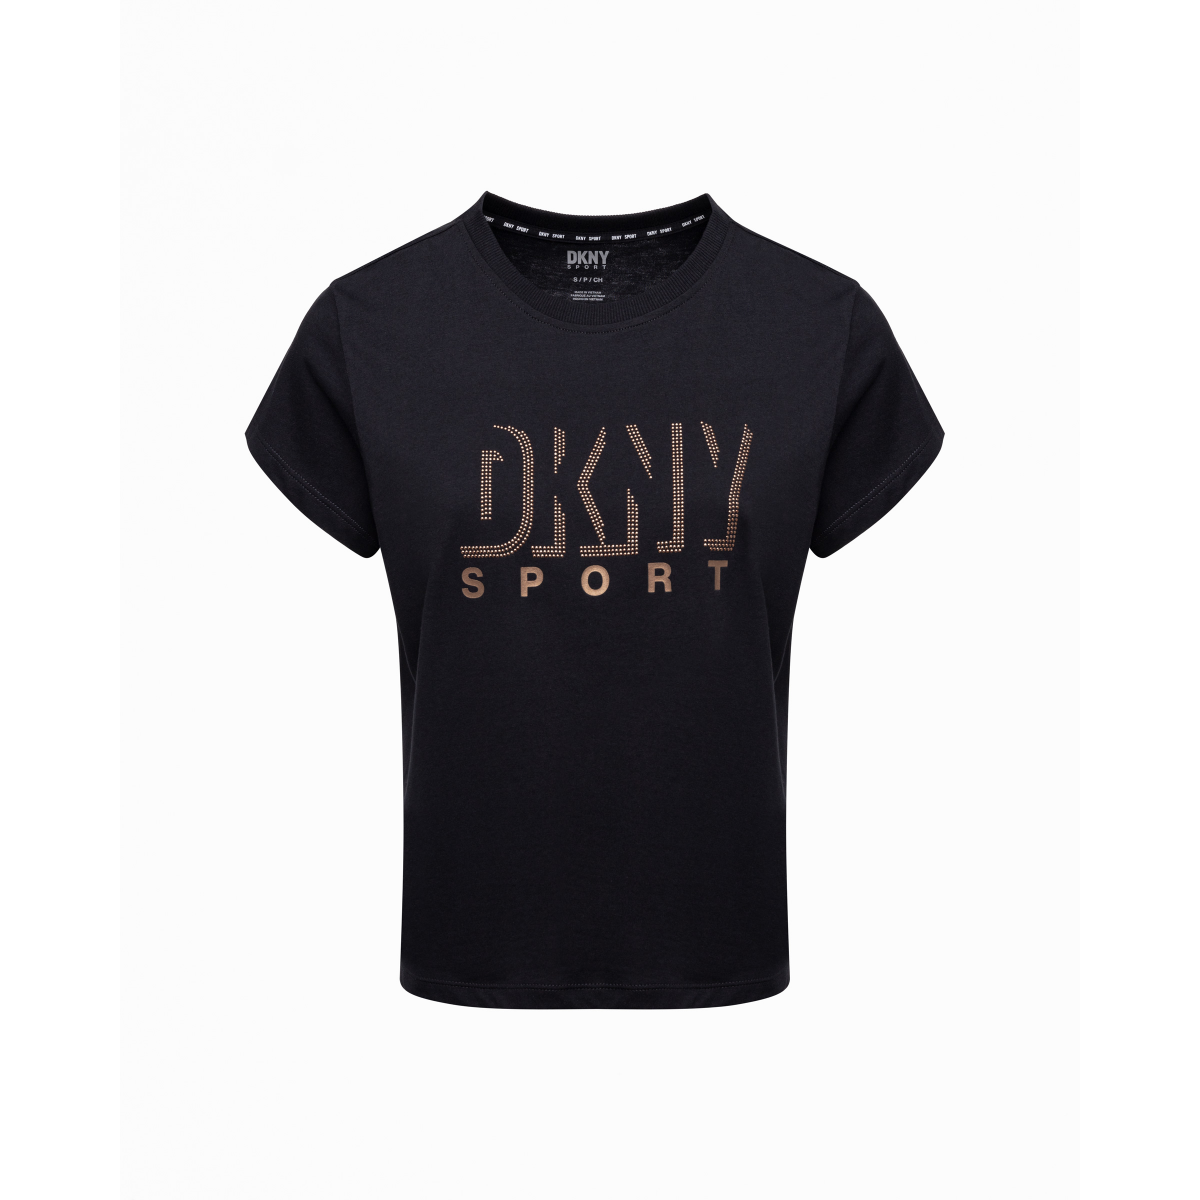 DKNY Sport DP2T9147 Black T-shirt - 302-2T9147-01